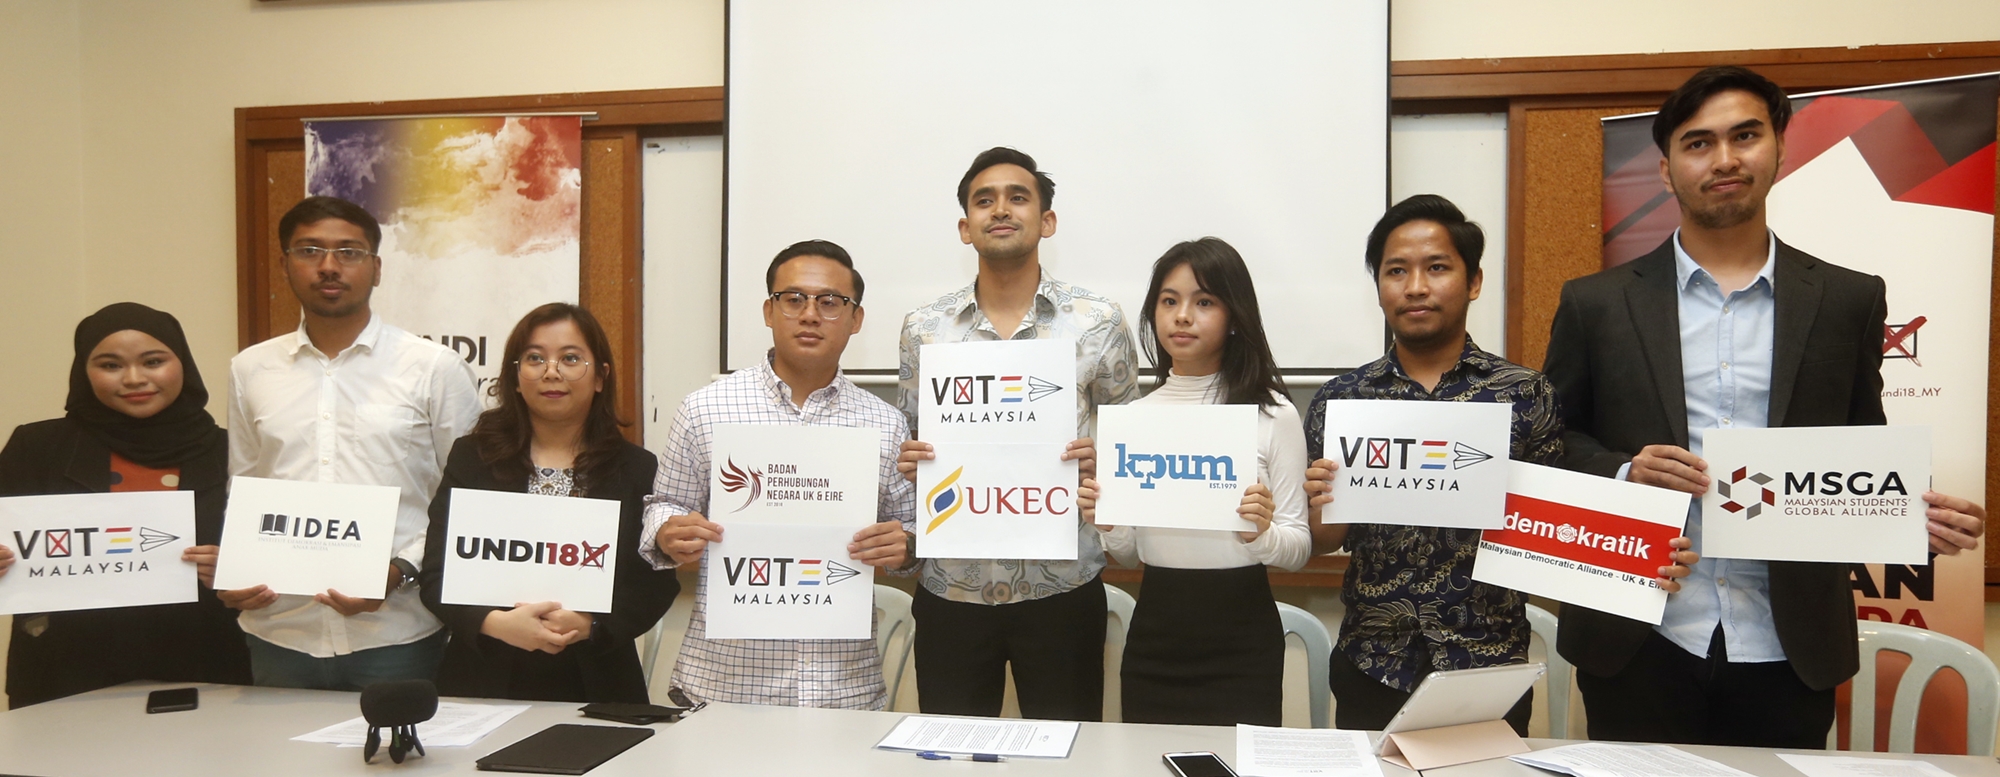 学生运动组织成立VoteMalaysia联盟